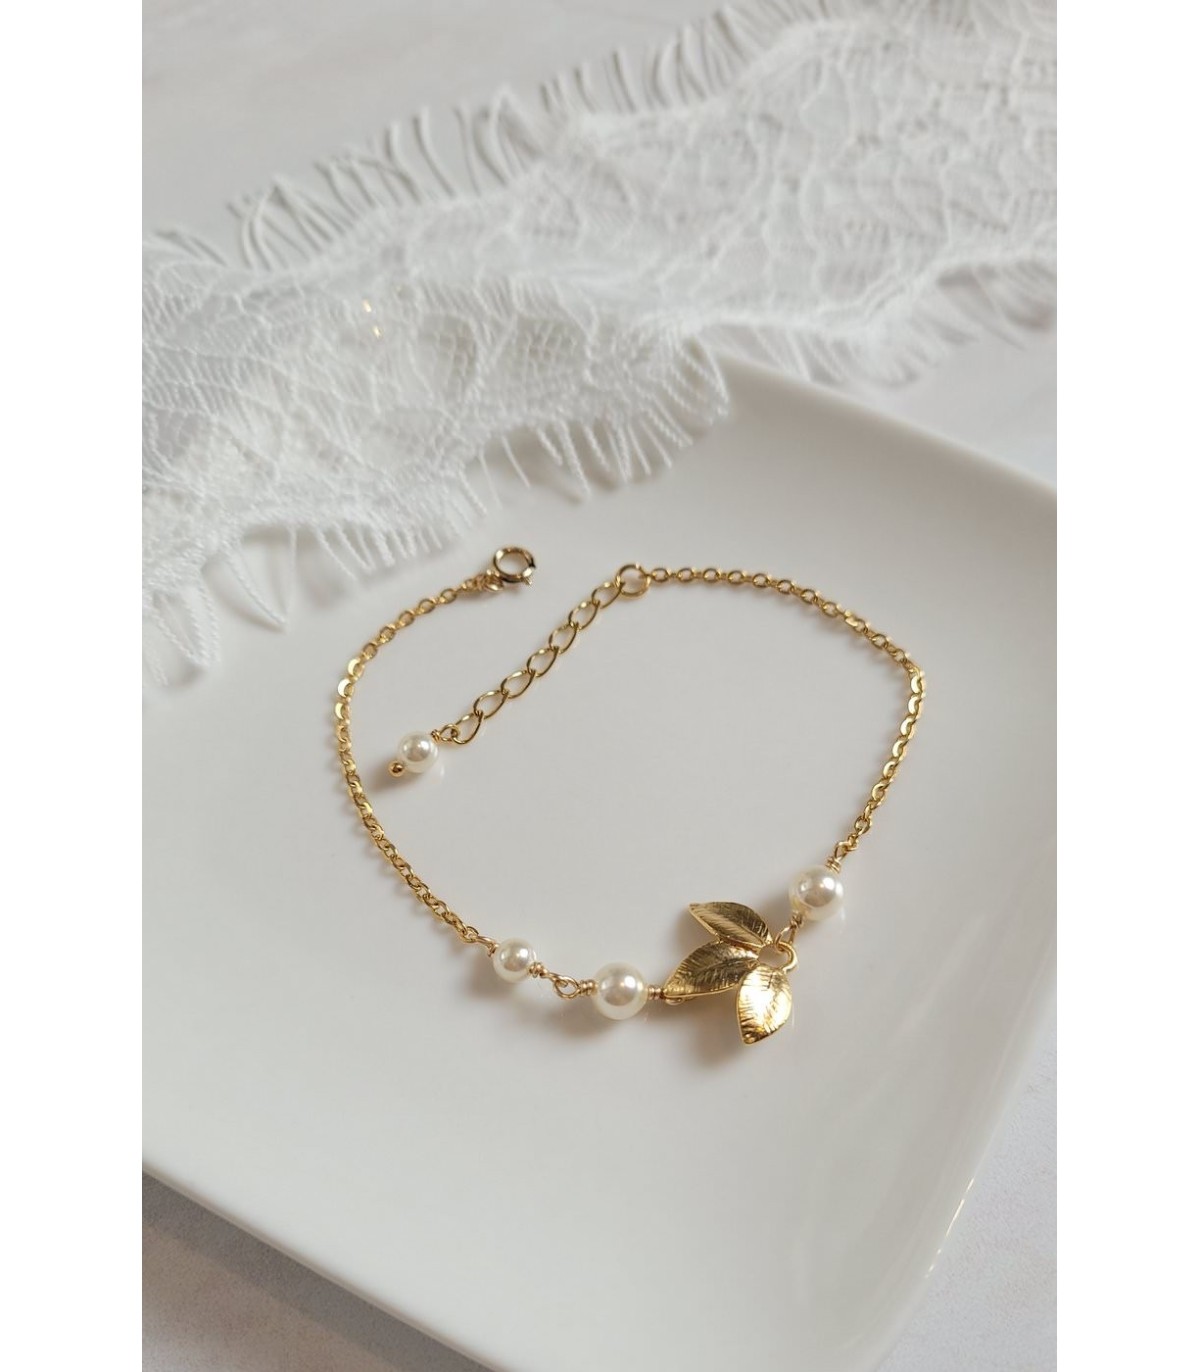 Bracelet de mariée Zen avec des feuilles dorées et perles pour la mariée bohème.